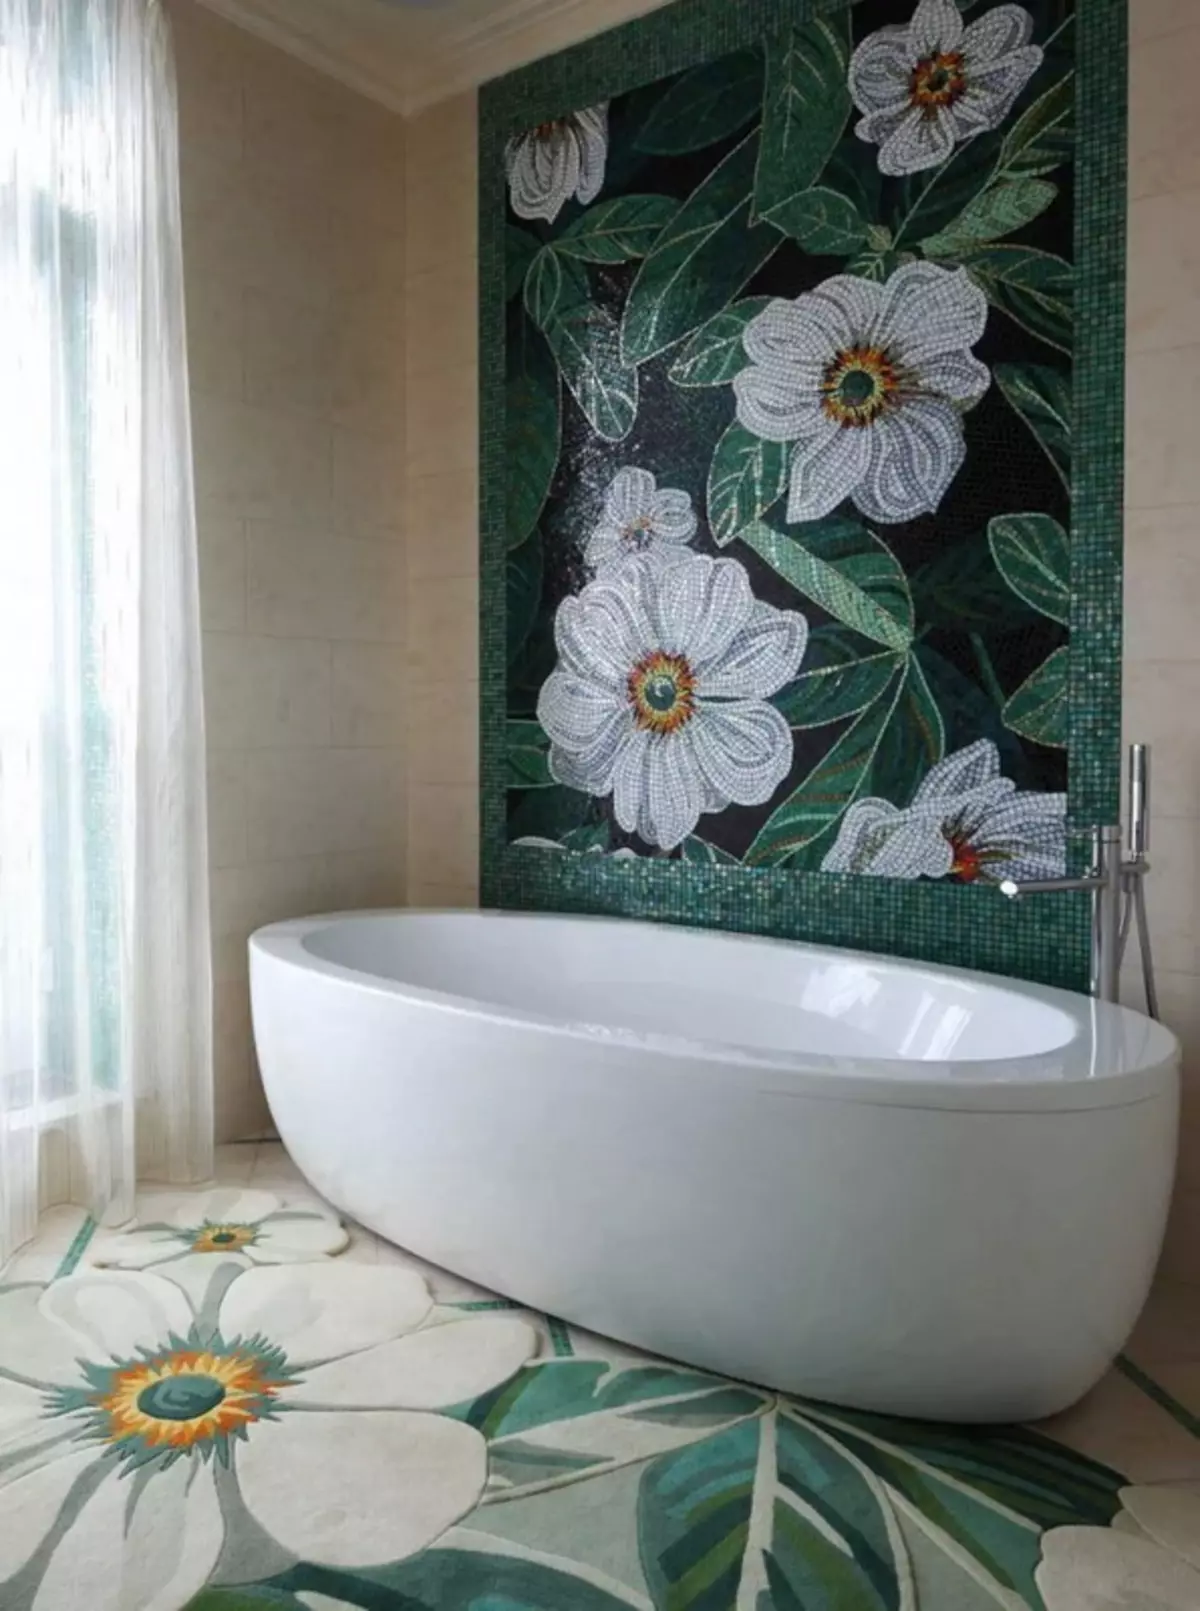 Πίνακας από κεραμίδι στο μπάνιο (79 φωτογραφίες): Επισκόπηση του πίνακα για το μπάνιο από κεραμικά πλακίδια και μωσαϊκά, πλακάκια και μωσαϊκά πάνελ με θαλάσσια θέματα και άλλα 21368_23